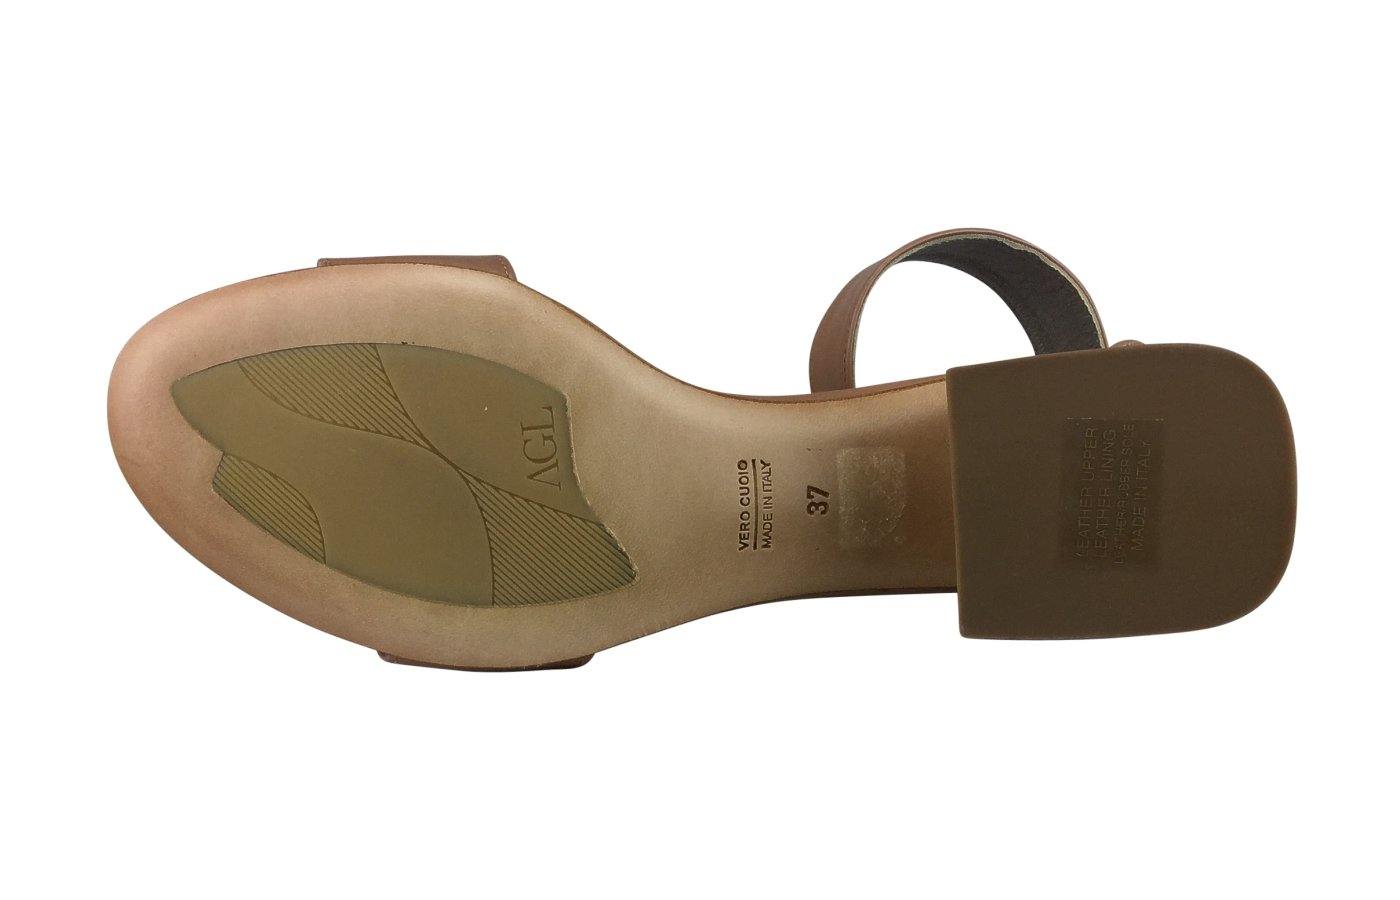 Schuhe AGL sale Sommer Sandale in camel mit Blockabsatz günstig kaufen